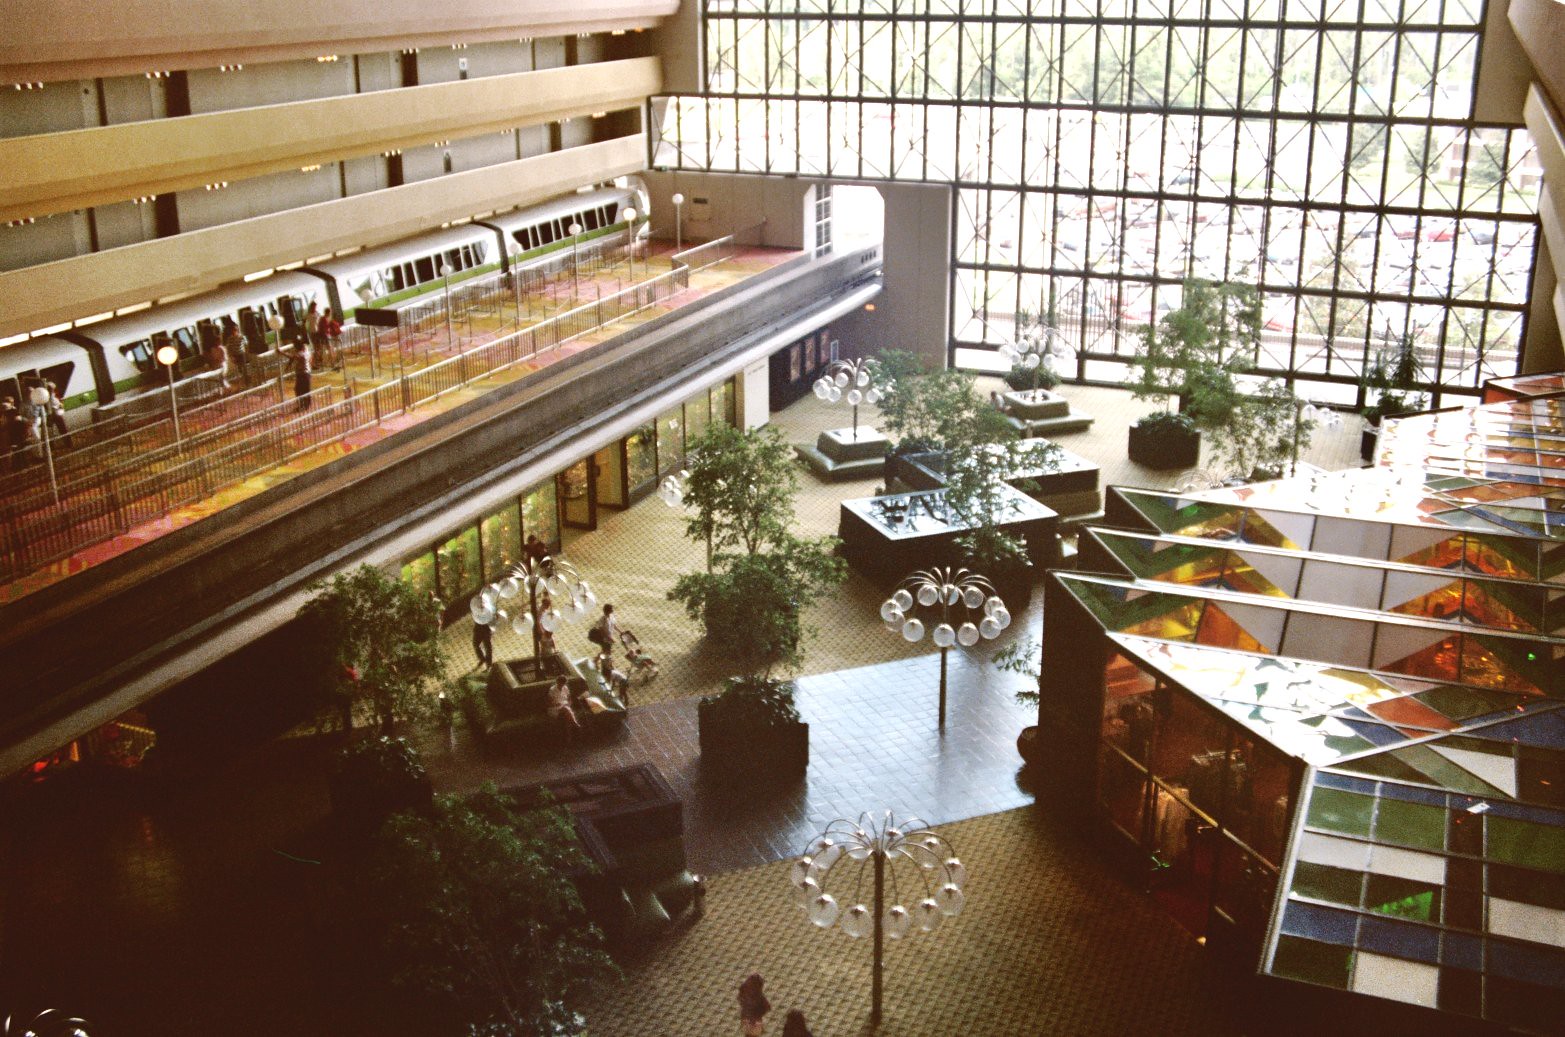 Contemporary Concourse in the 1980s